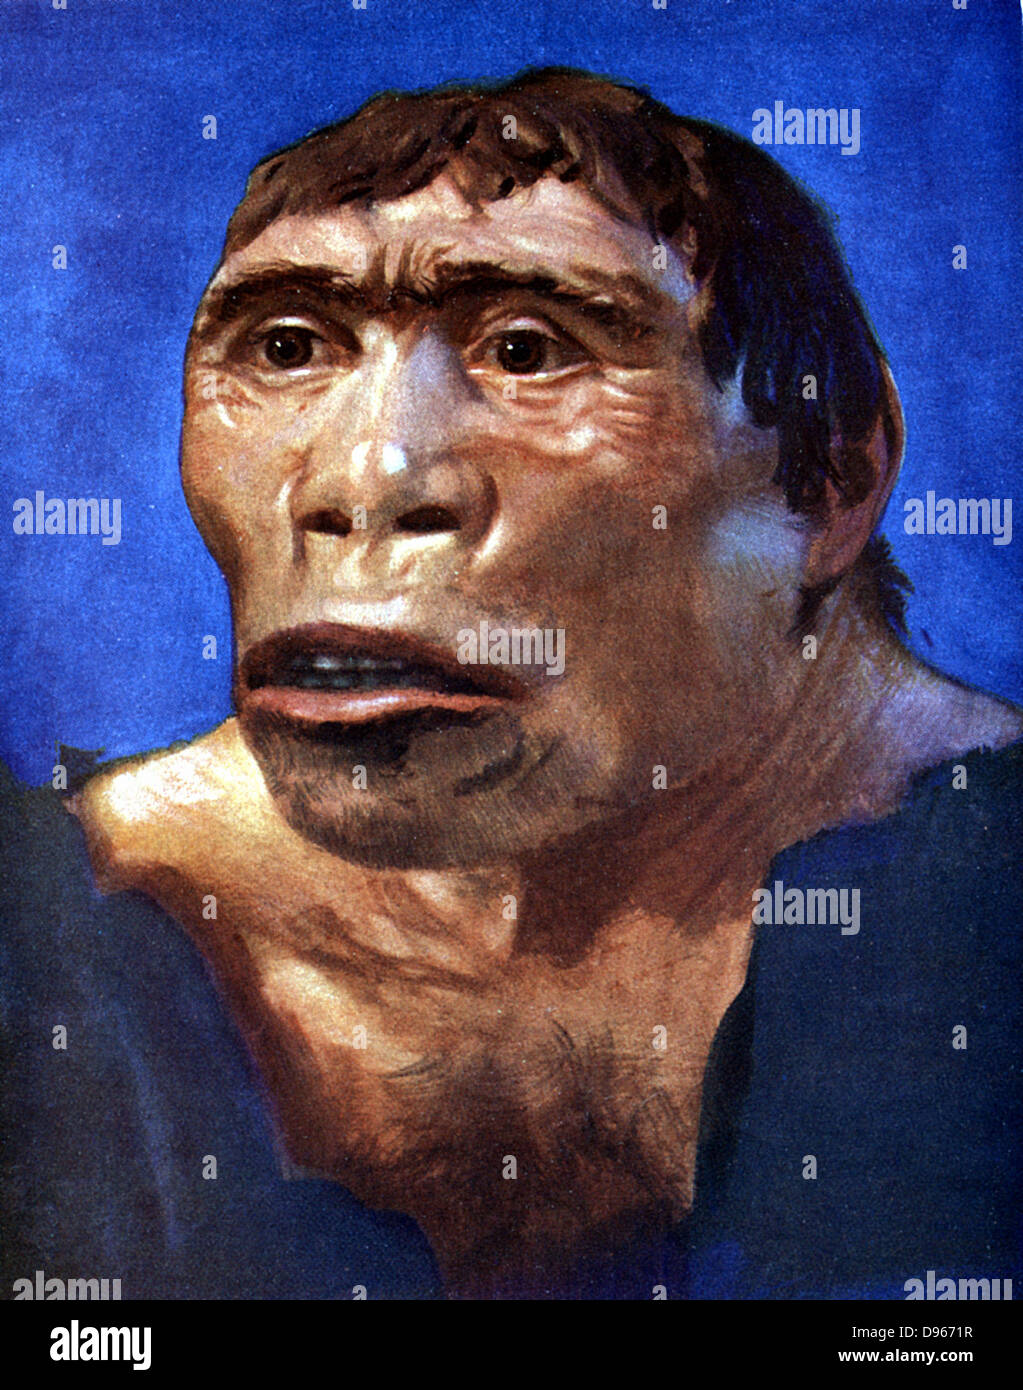 La ricostruzione di Java Man (Pithecanthropus erectus) basato sulla calotta, femore e 2 denti posteriori scoperto nel Pliocene Fossil Beds in Trinil, Java Centrale, dal dr. Eugene Dubois nel 1894. Foto Stock